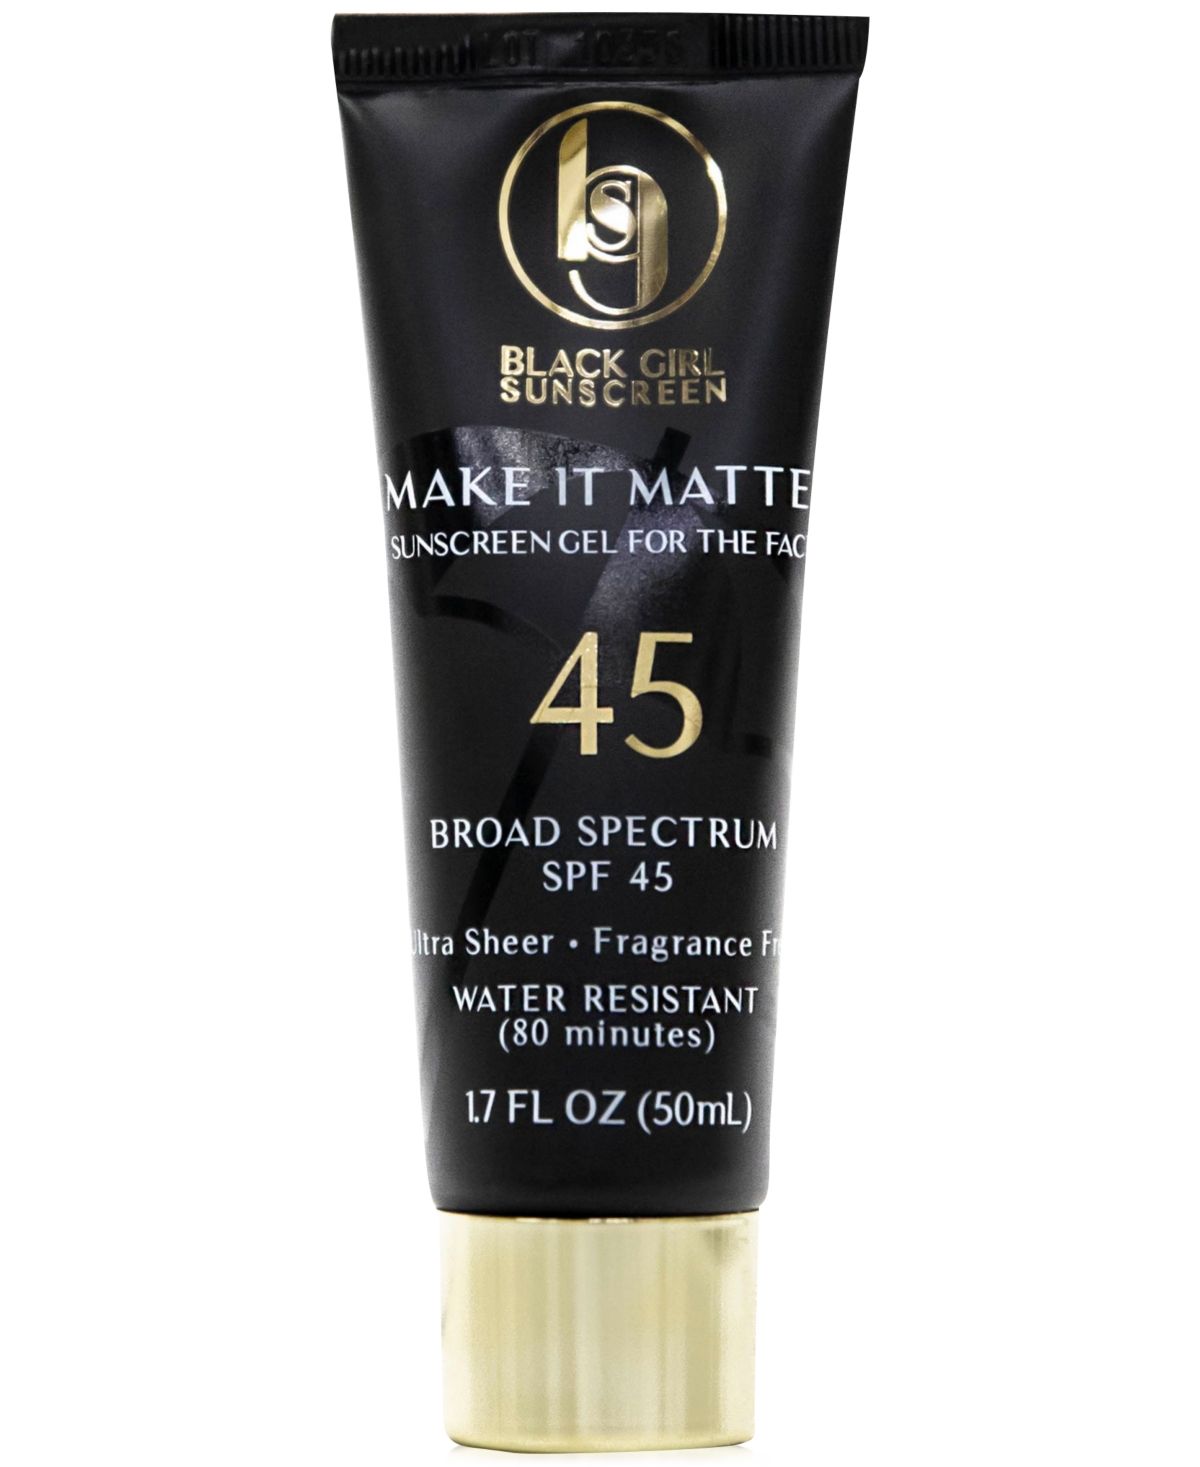 Black Girl Sunscreen Make It Matte Sunscreen Spf 45, 1.7 oz. | Macys (US)